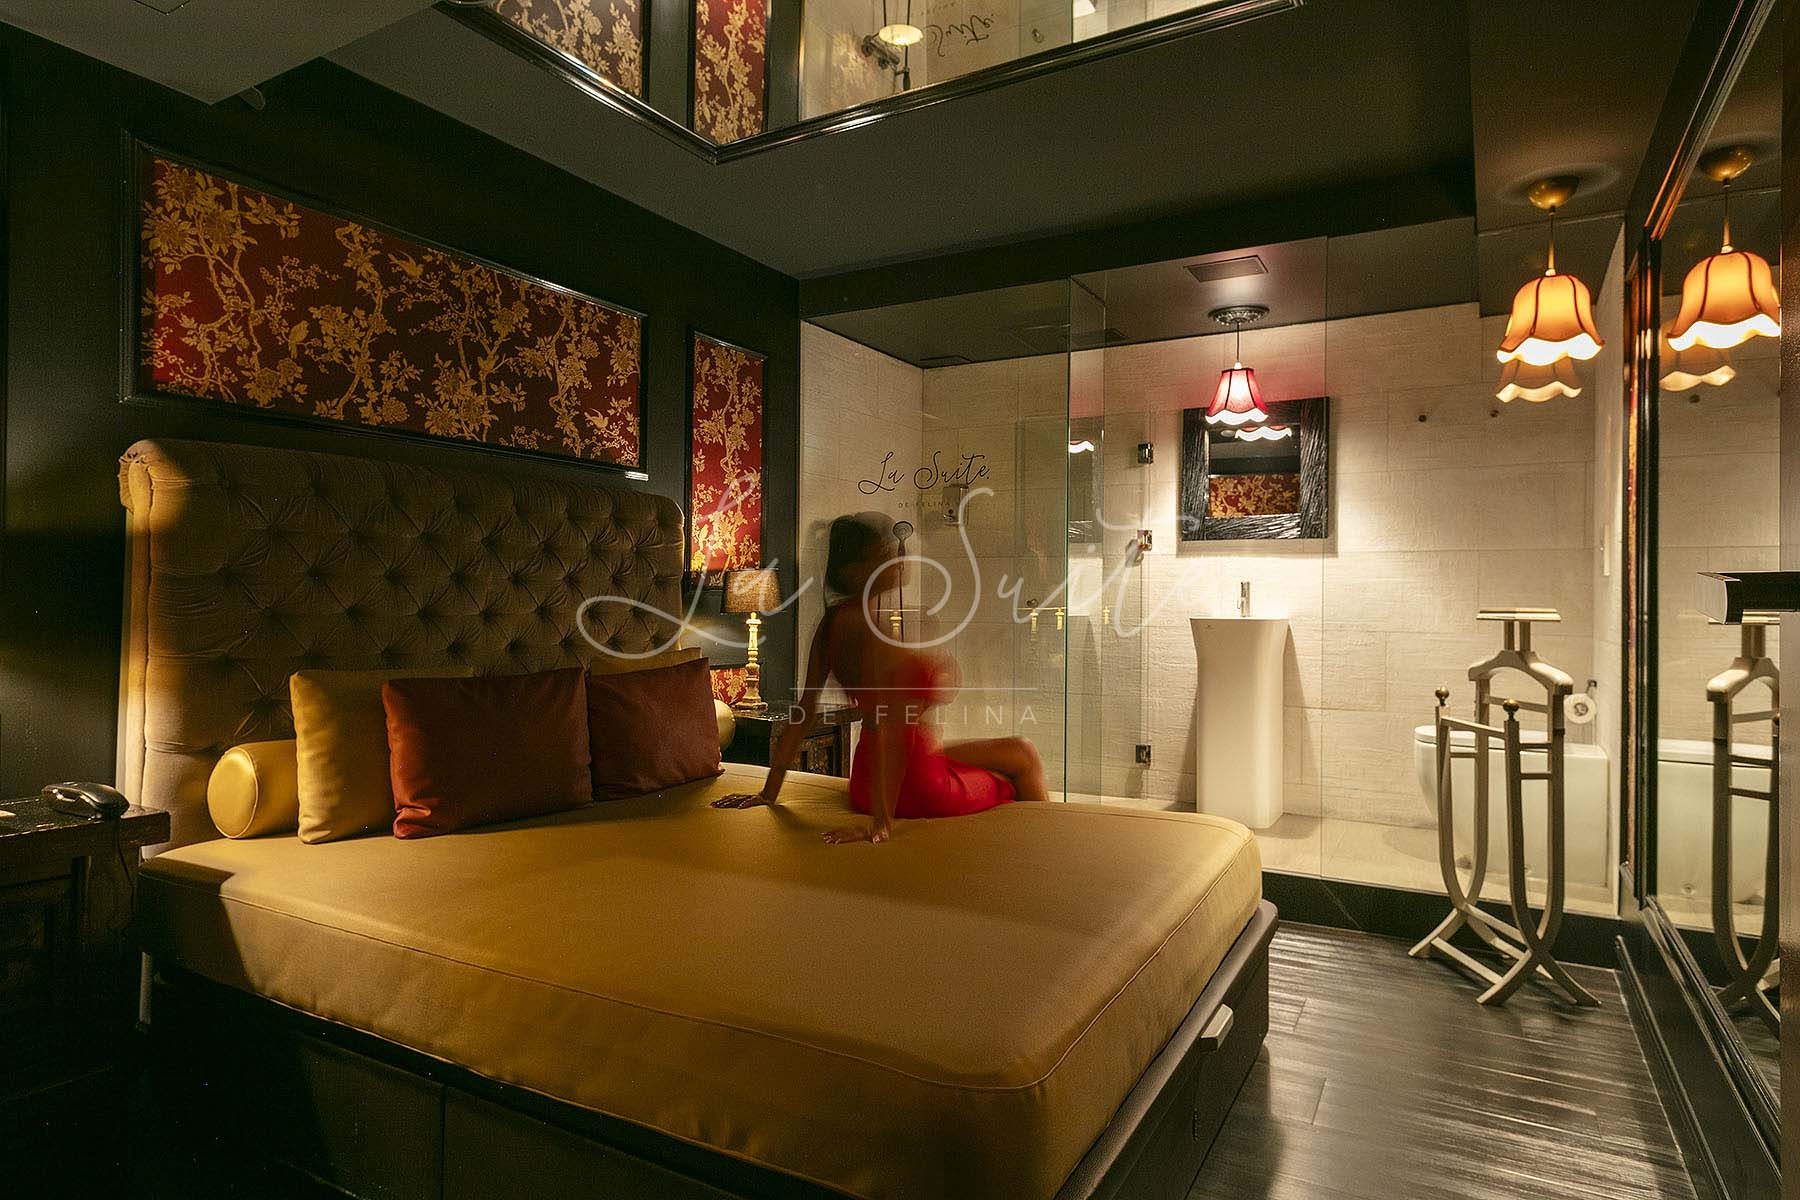 Sala di bellezza moderna, in stile vittoriano con ornamenti dorati e finiture in legno, con lavabo doccia a sfioro, a La Suite, Barcellona